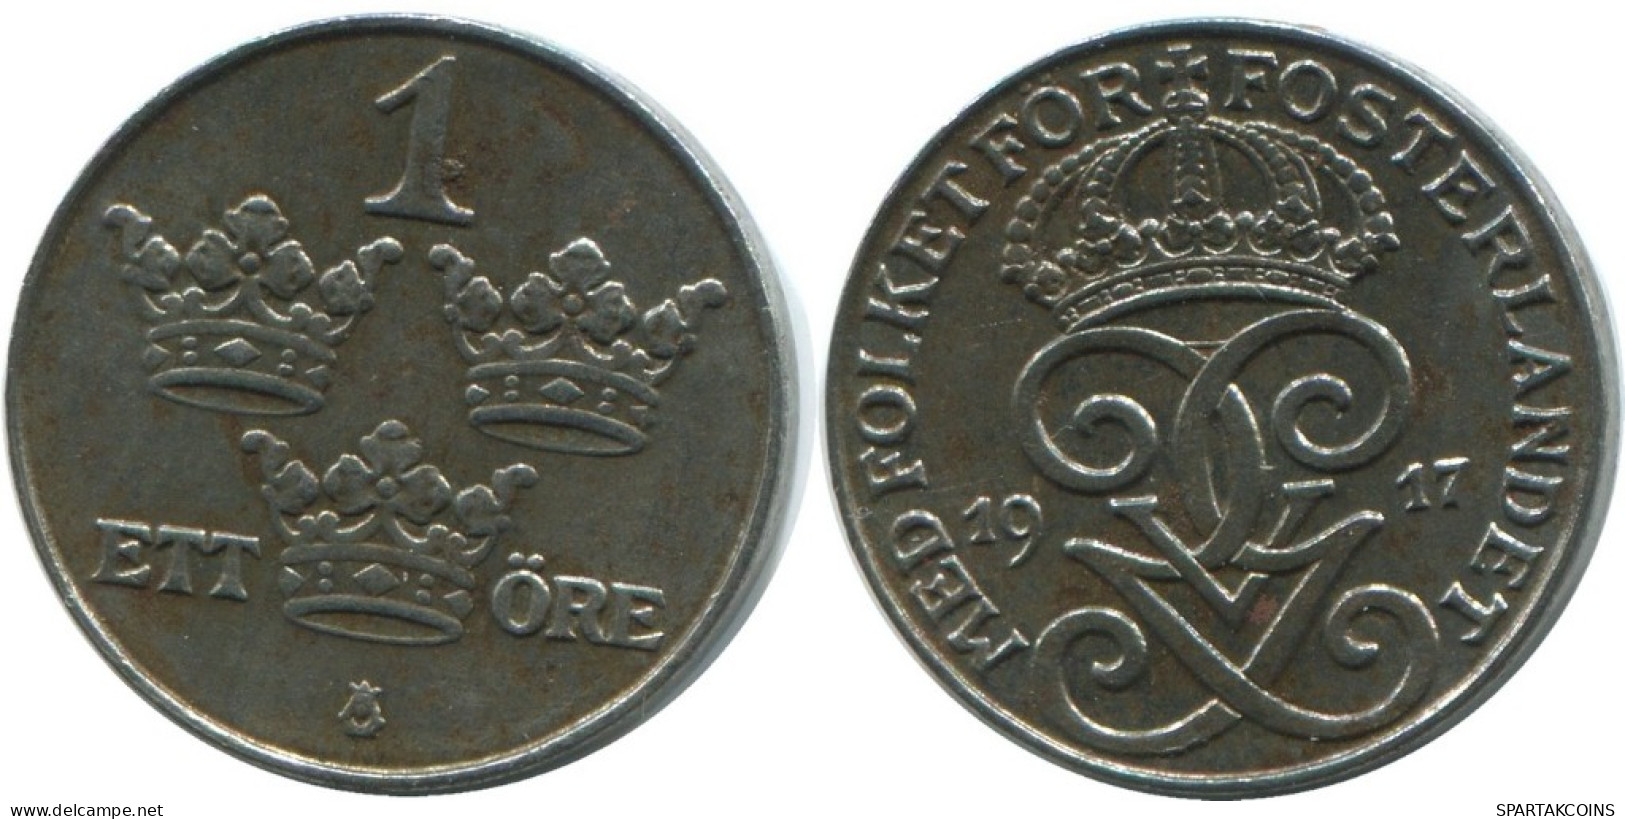 1 ORE 1917 SUECIA SWEDEN Moneda #AD136.2.E.A - Sweden